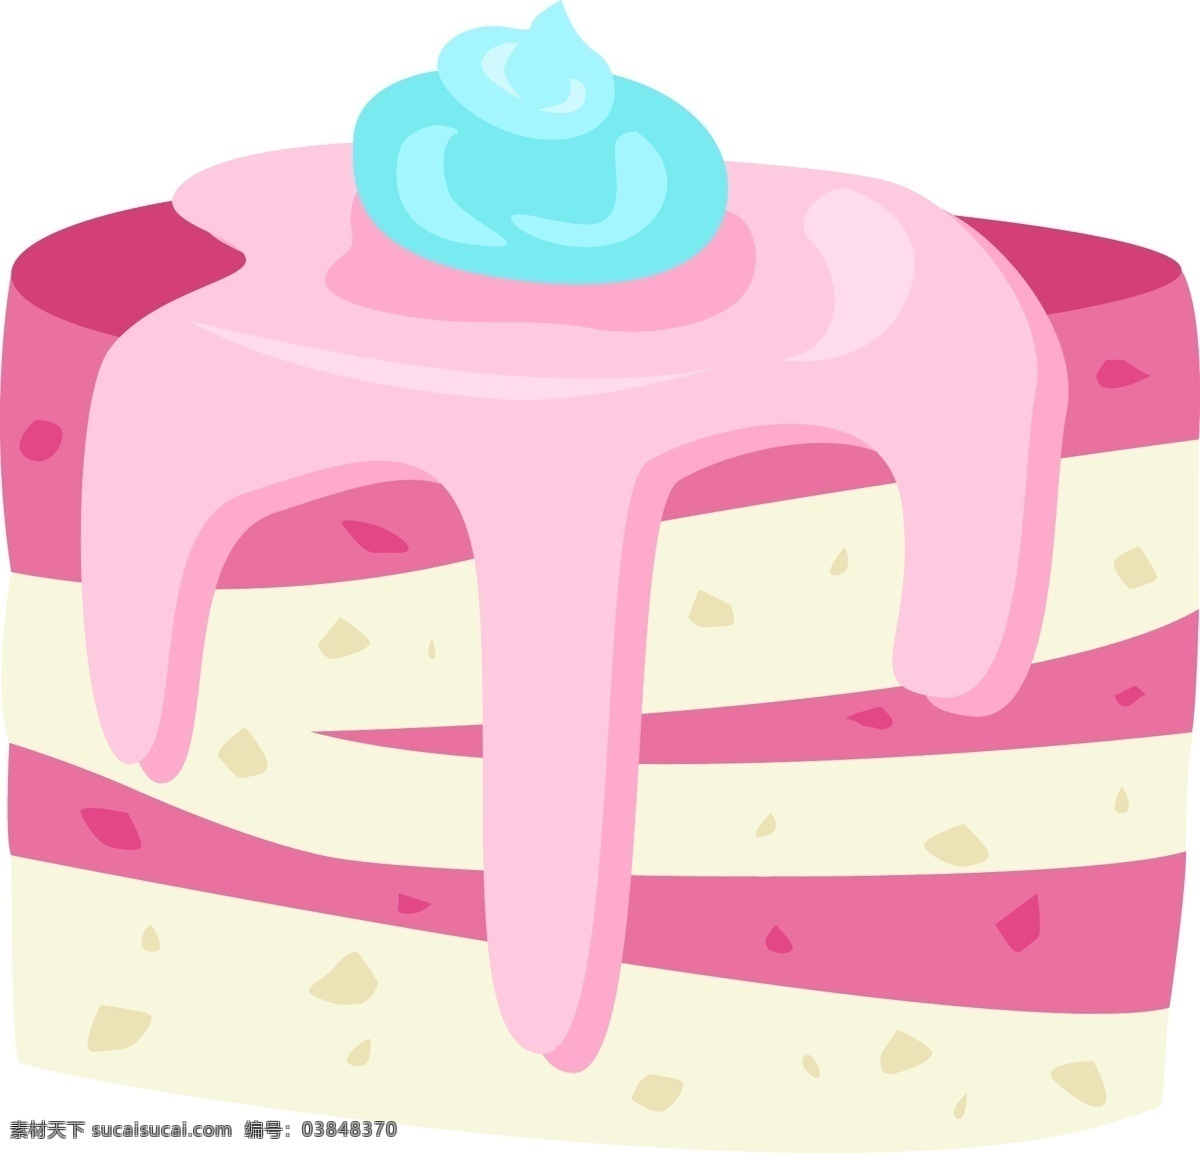 卡通 手绘 甜品 甜点 美食 水果蛋糕 儿童节 巧克力 玫瑰花 奶油 宴会 水果 生日 祝贺 糕点 美味 草莓 葡萄 蛋糕 裱花 寿